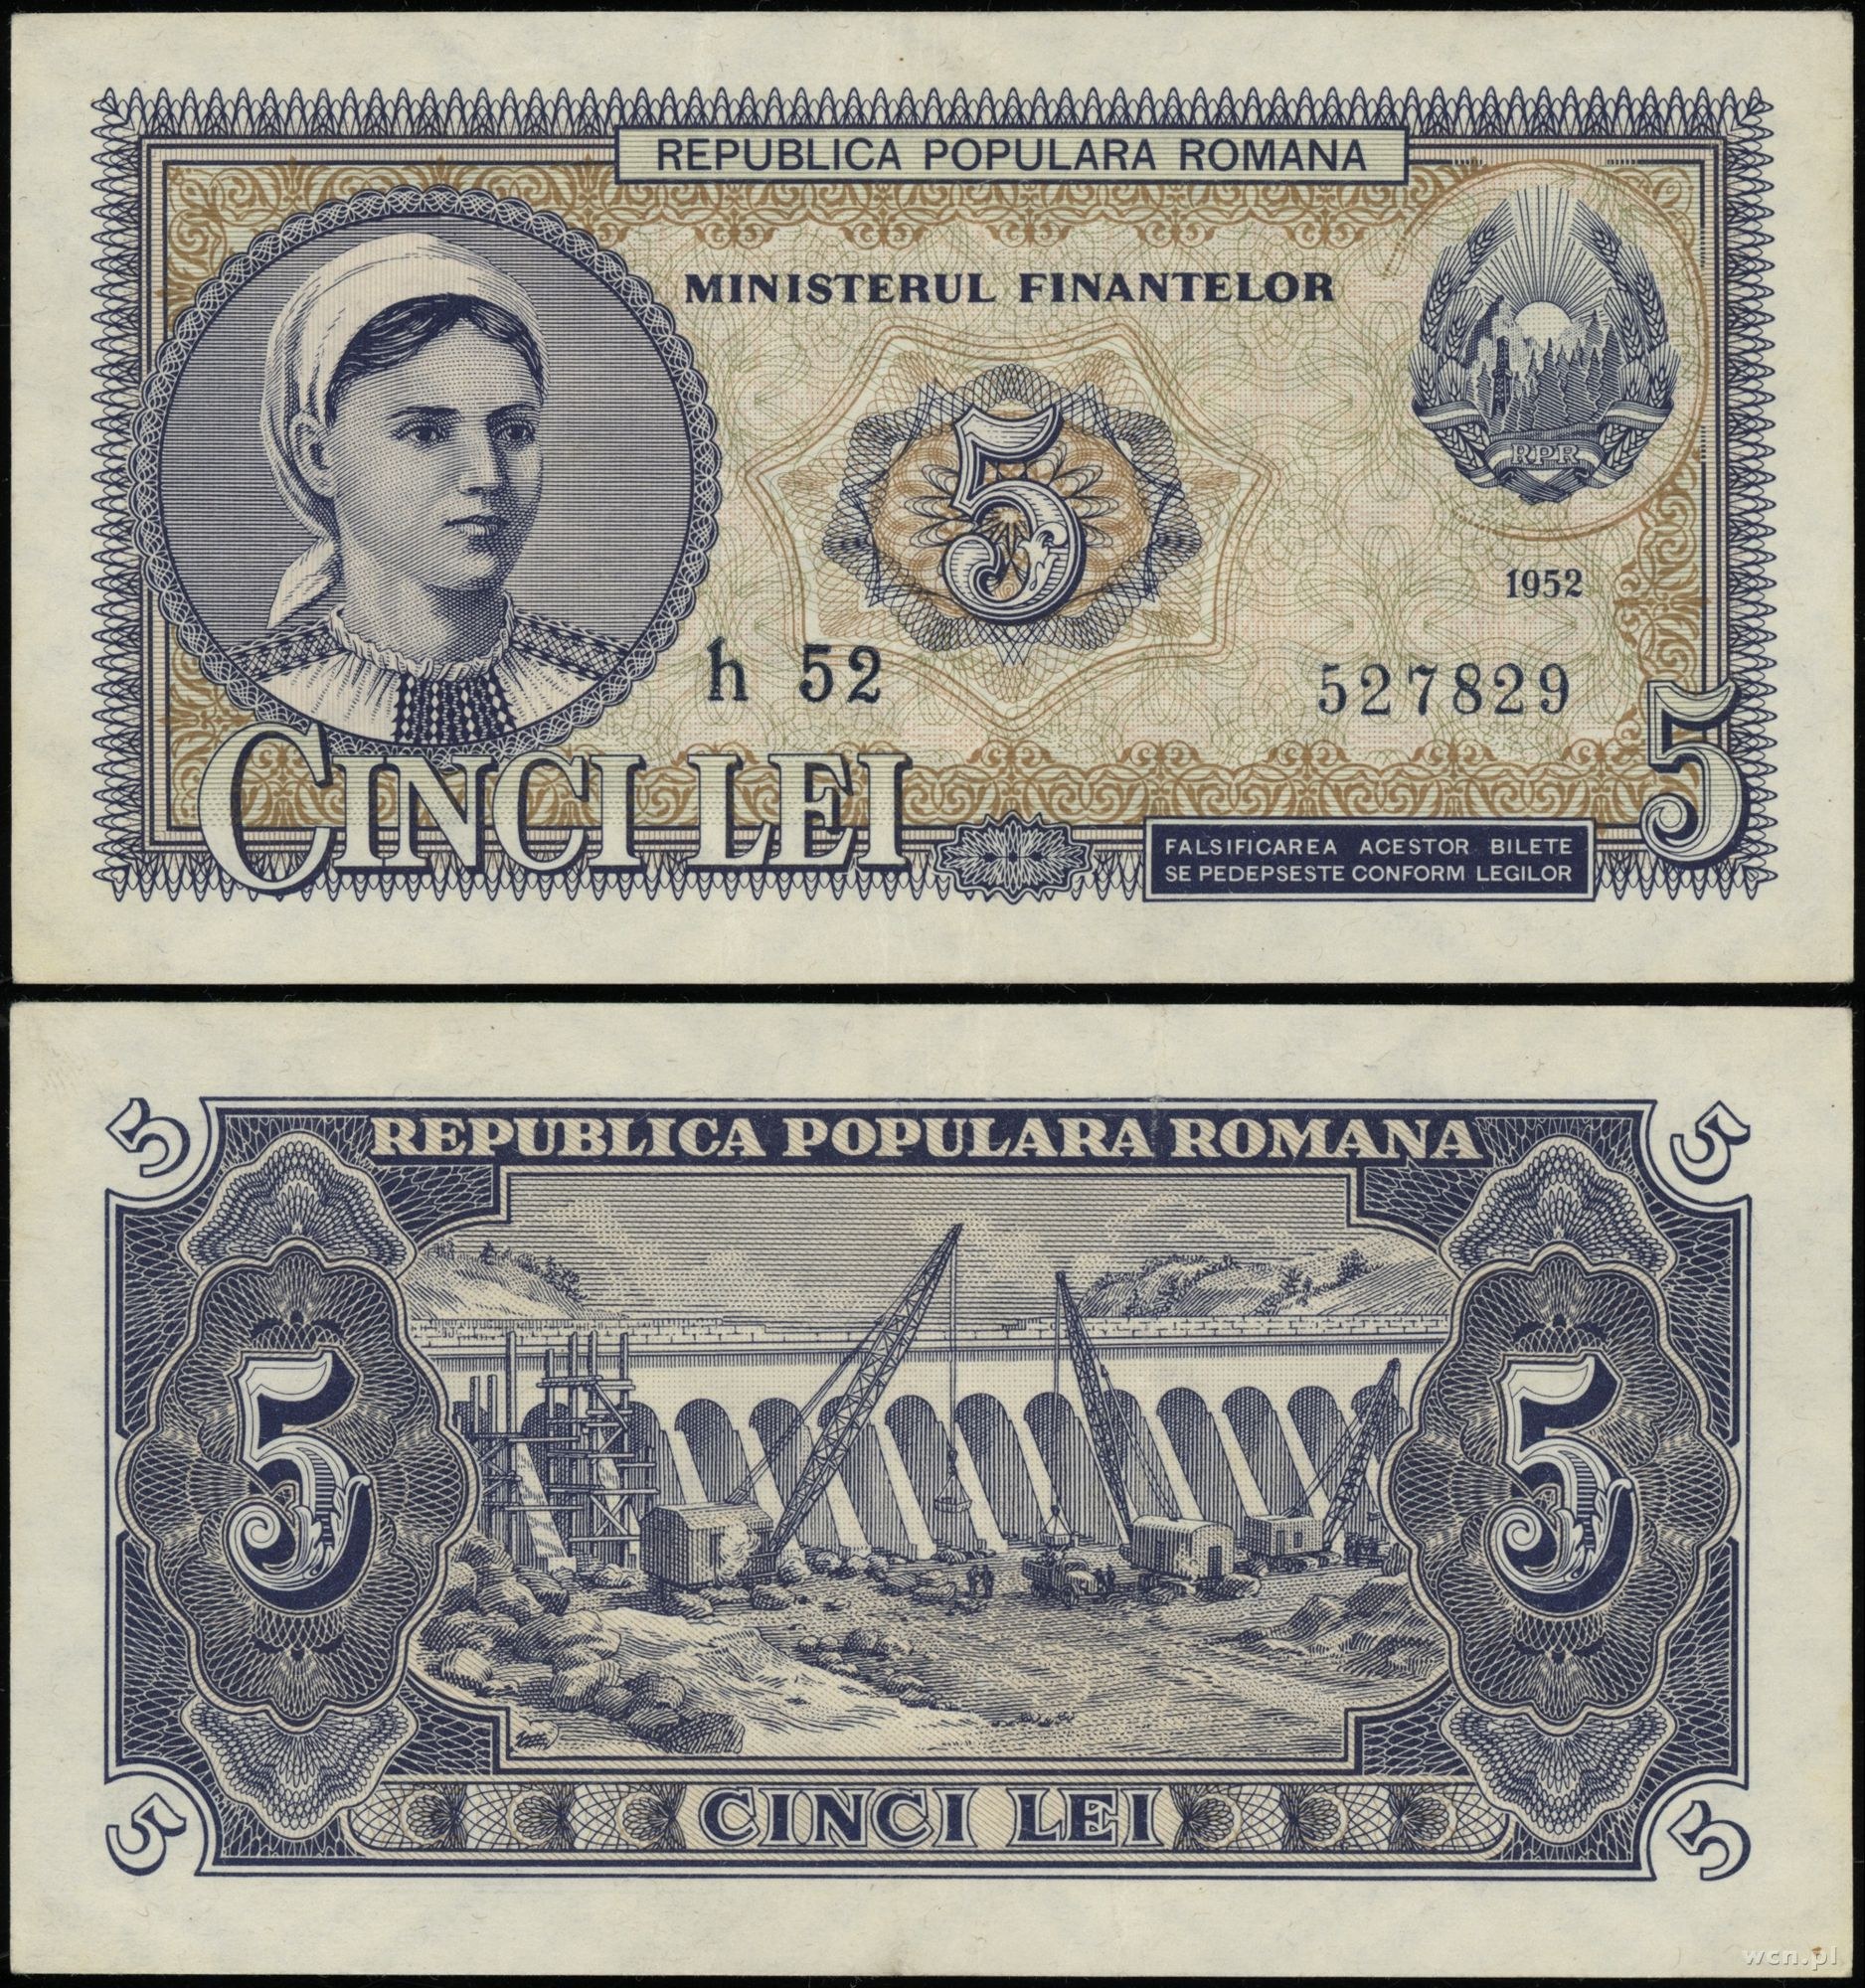 5 лей в рублях. Румыния 1 лей 1952. Банкноты Румынии. Румынские купюры. Банкноты социалистической Румынии.